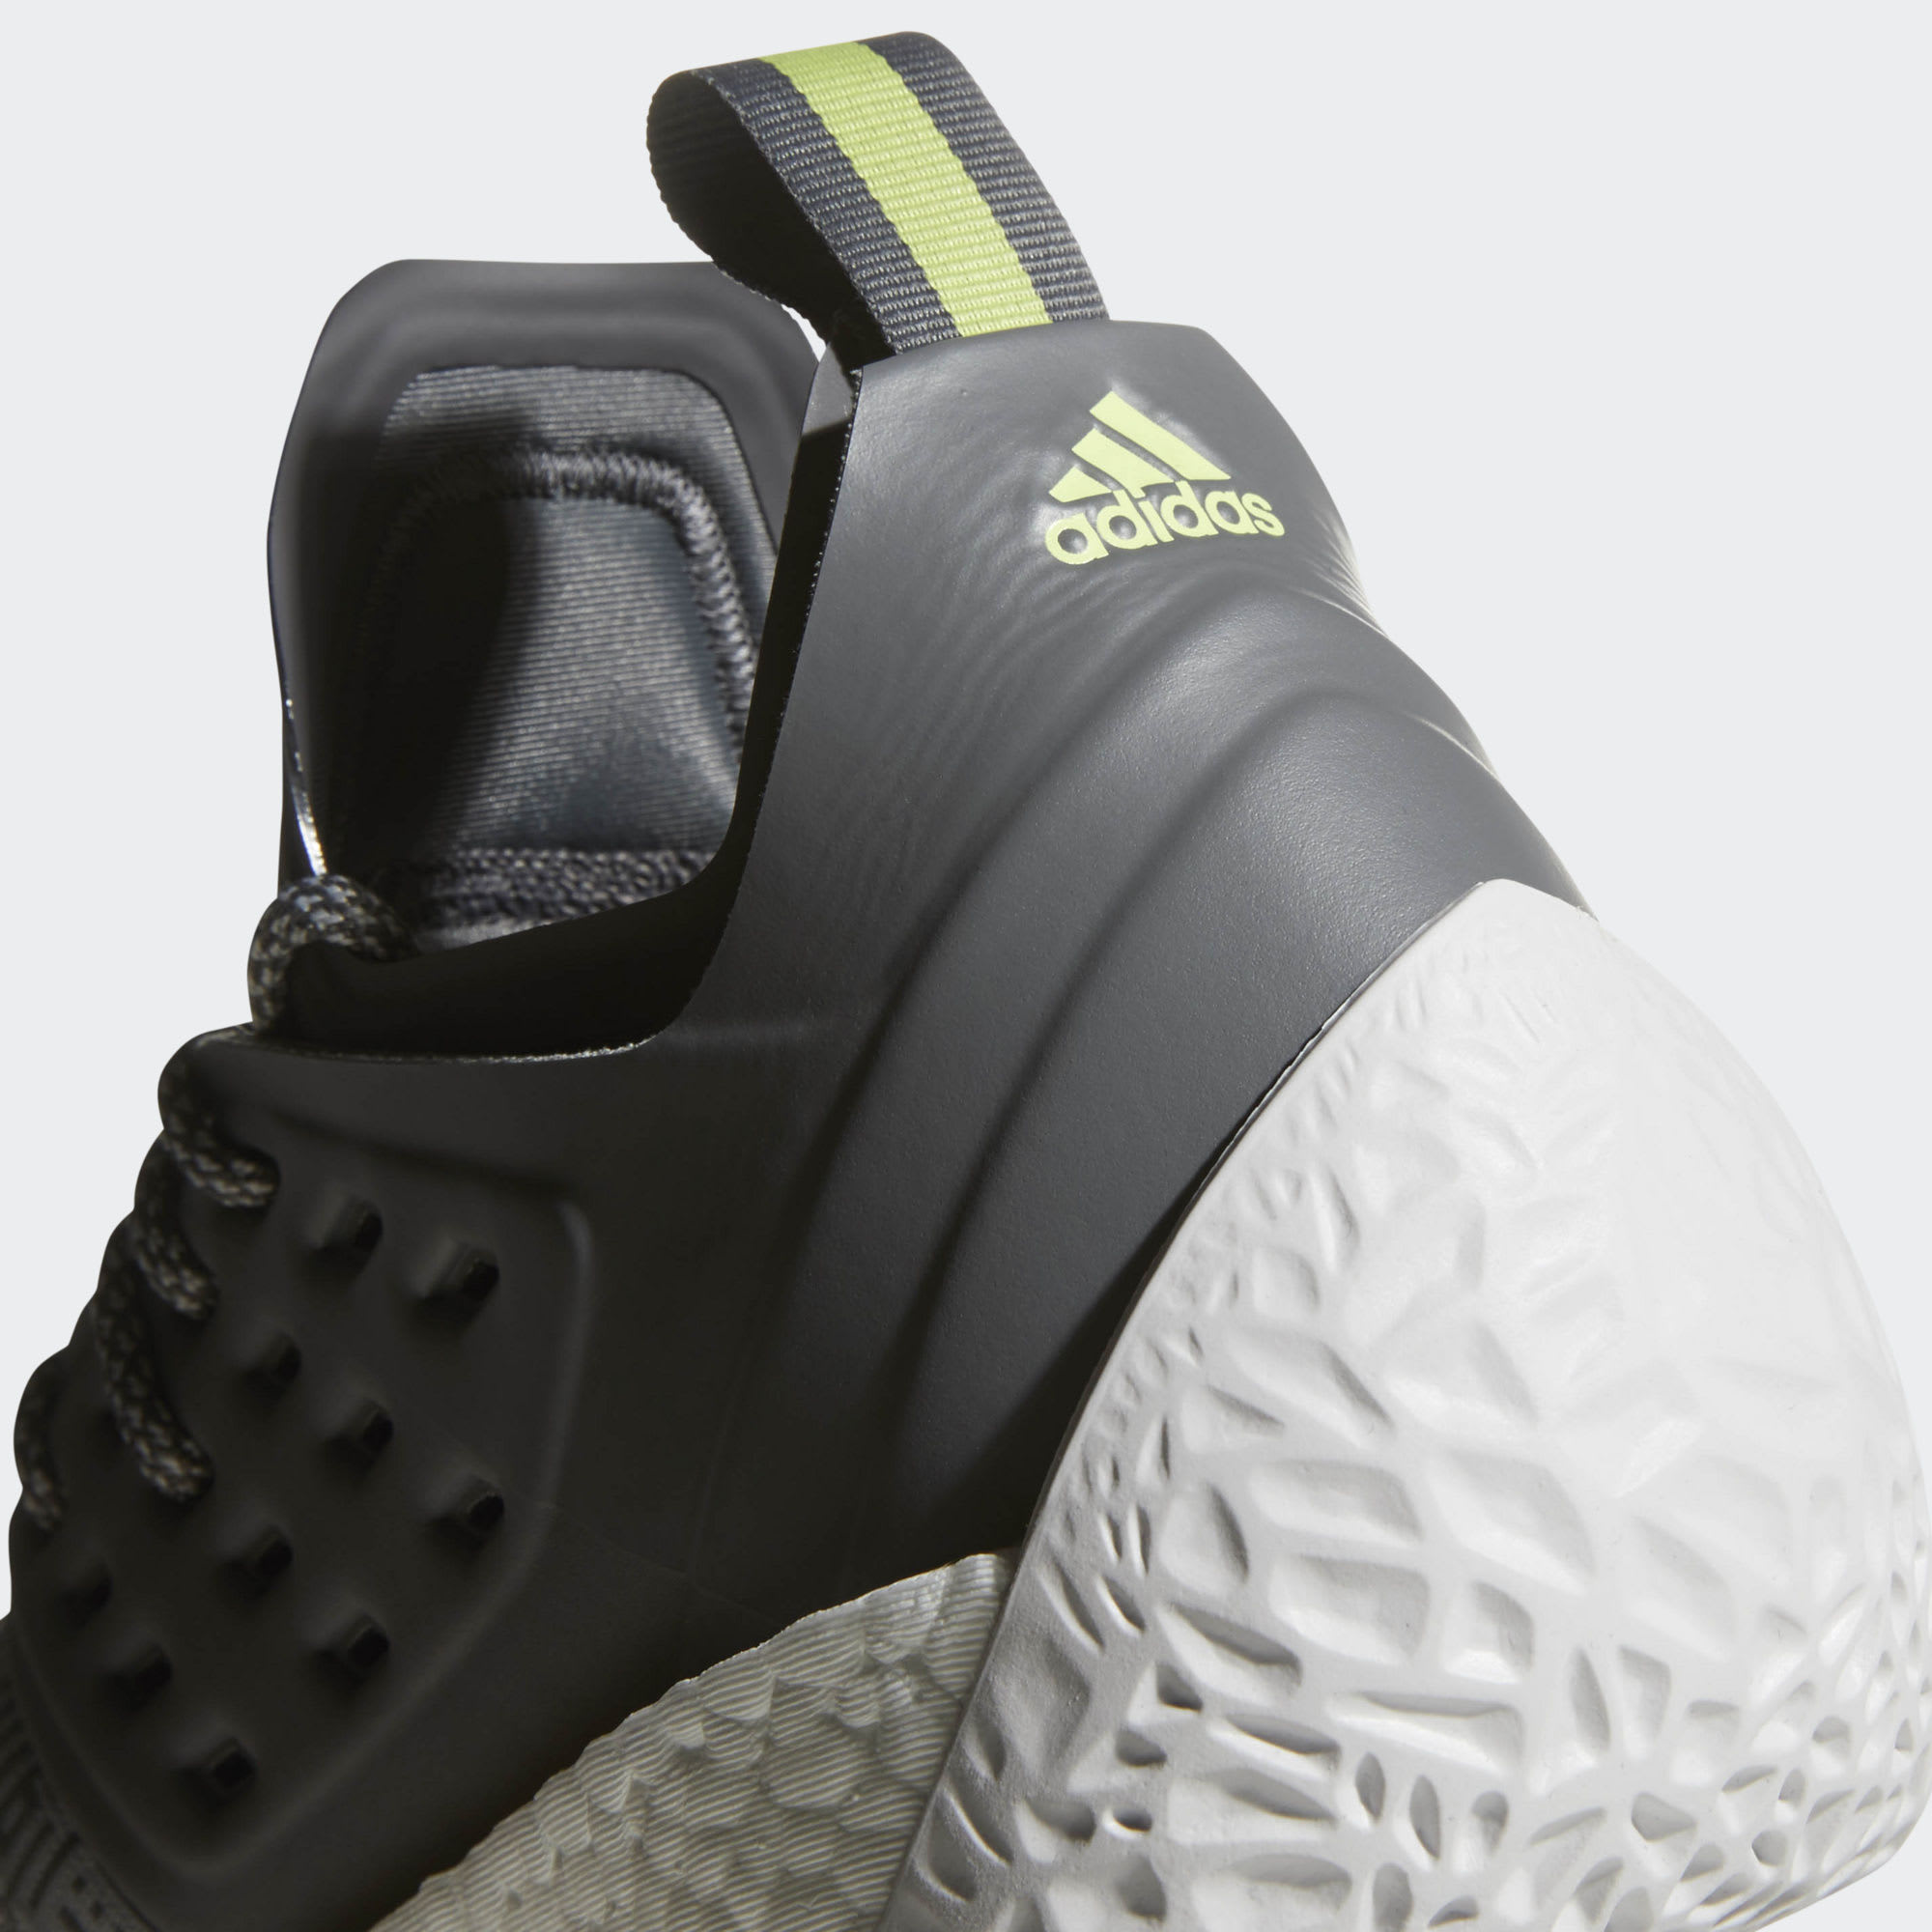 Adidas Harden Vol. 2 Concrete Grey Release Date AH2122 Heel